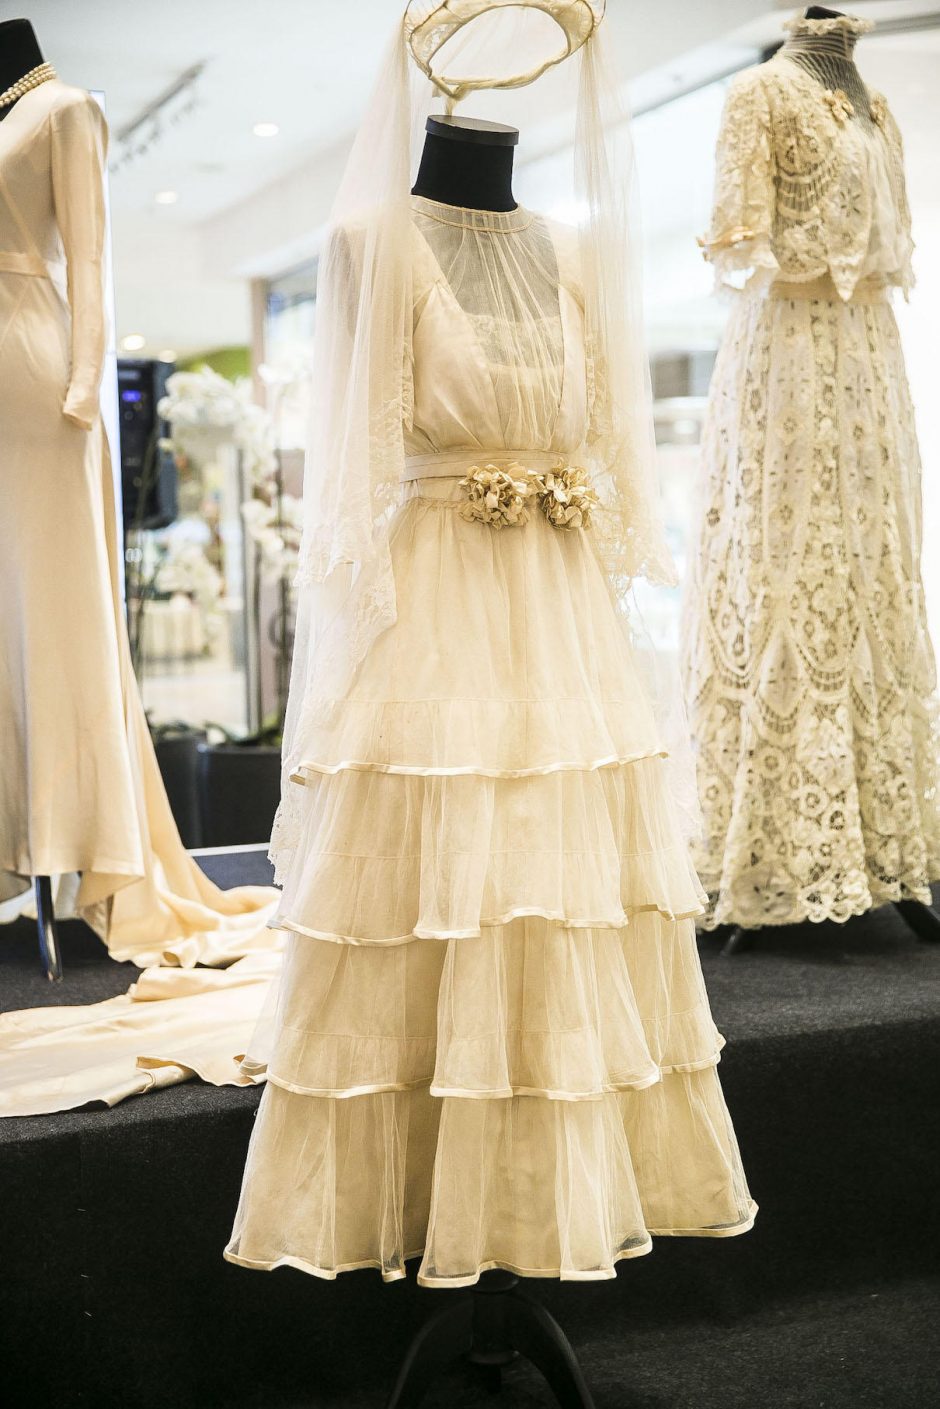 A. Vasiljevo parodoje pirmąkart eksponuojama J. Statkevičiaus kurta suknia